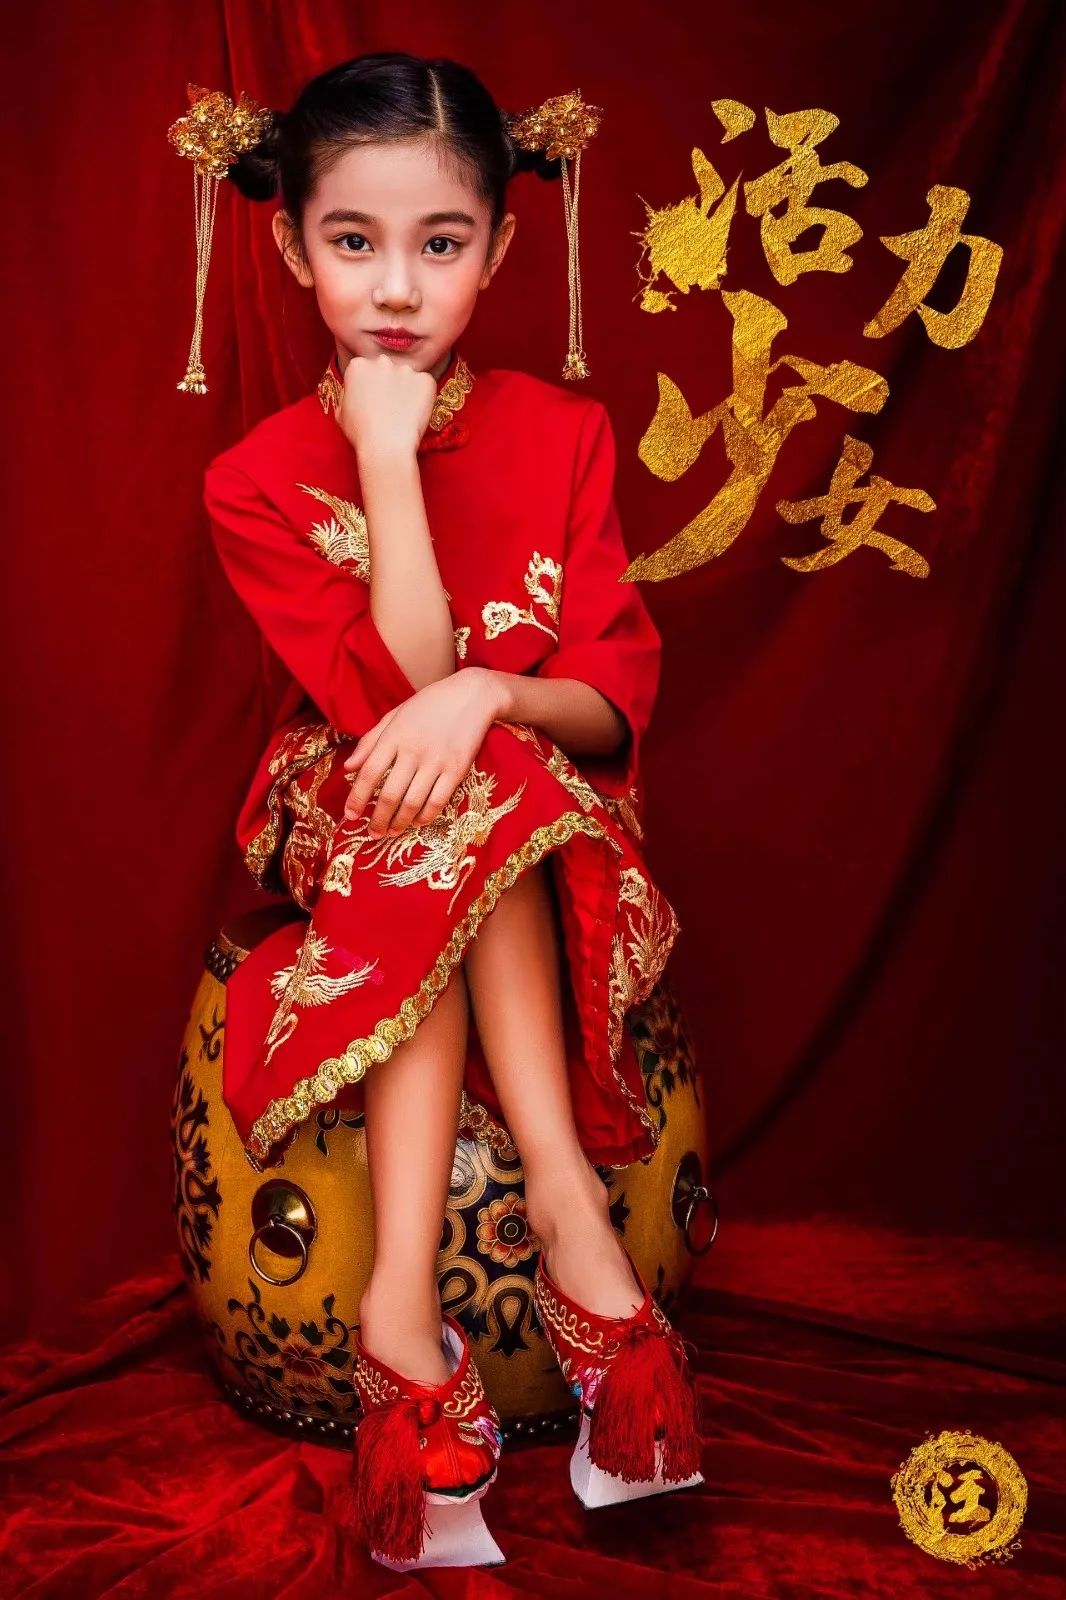 上海儿童古装摄影_上海儿童摄影工作室_上海萌摄影创意儿童写真